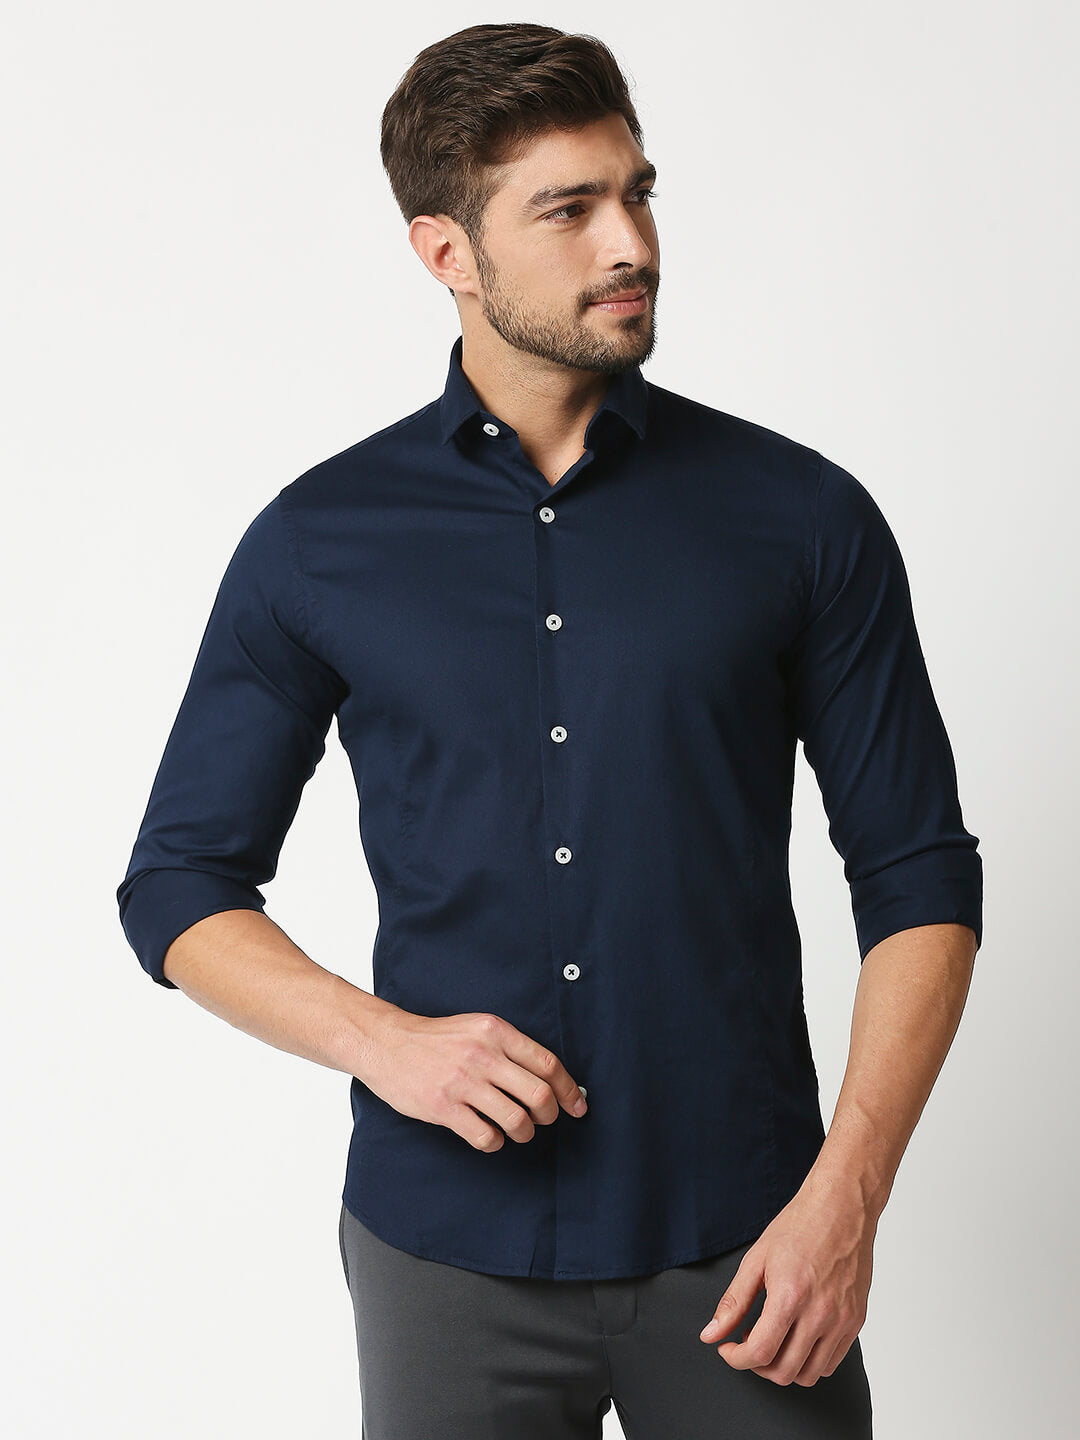 The Manaca Men Plain Shirt - Navy Blue